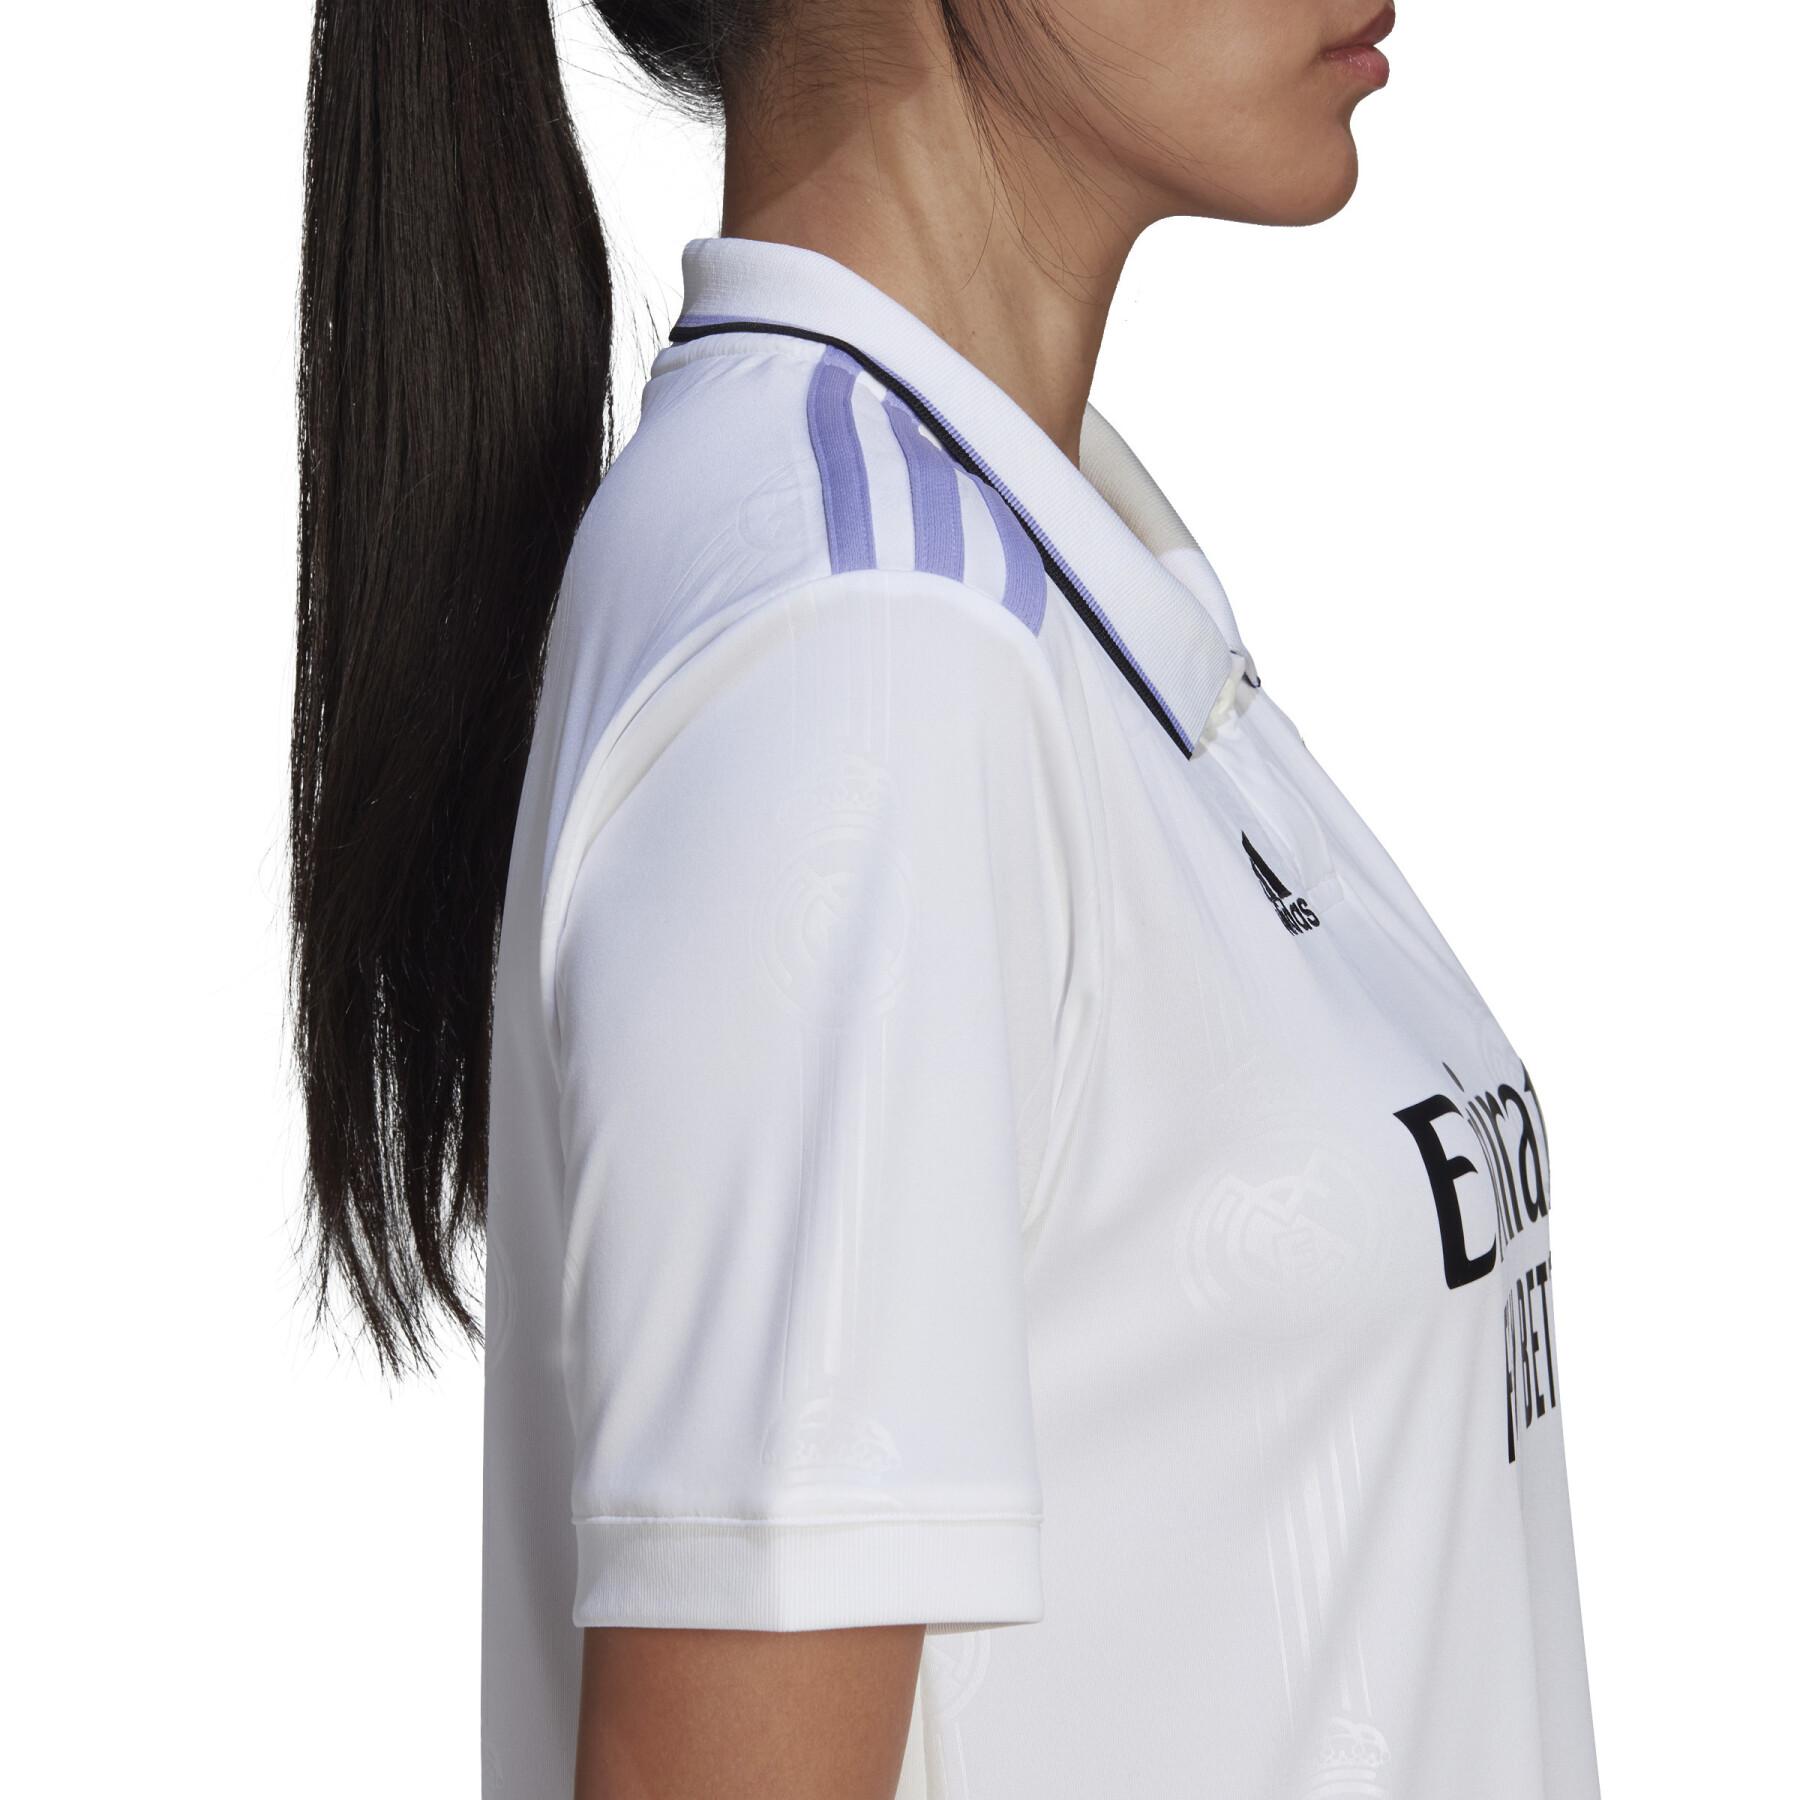 Maillot Domicile femme Real Madrid 2022/23